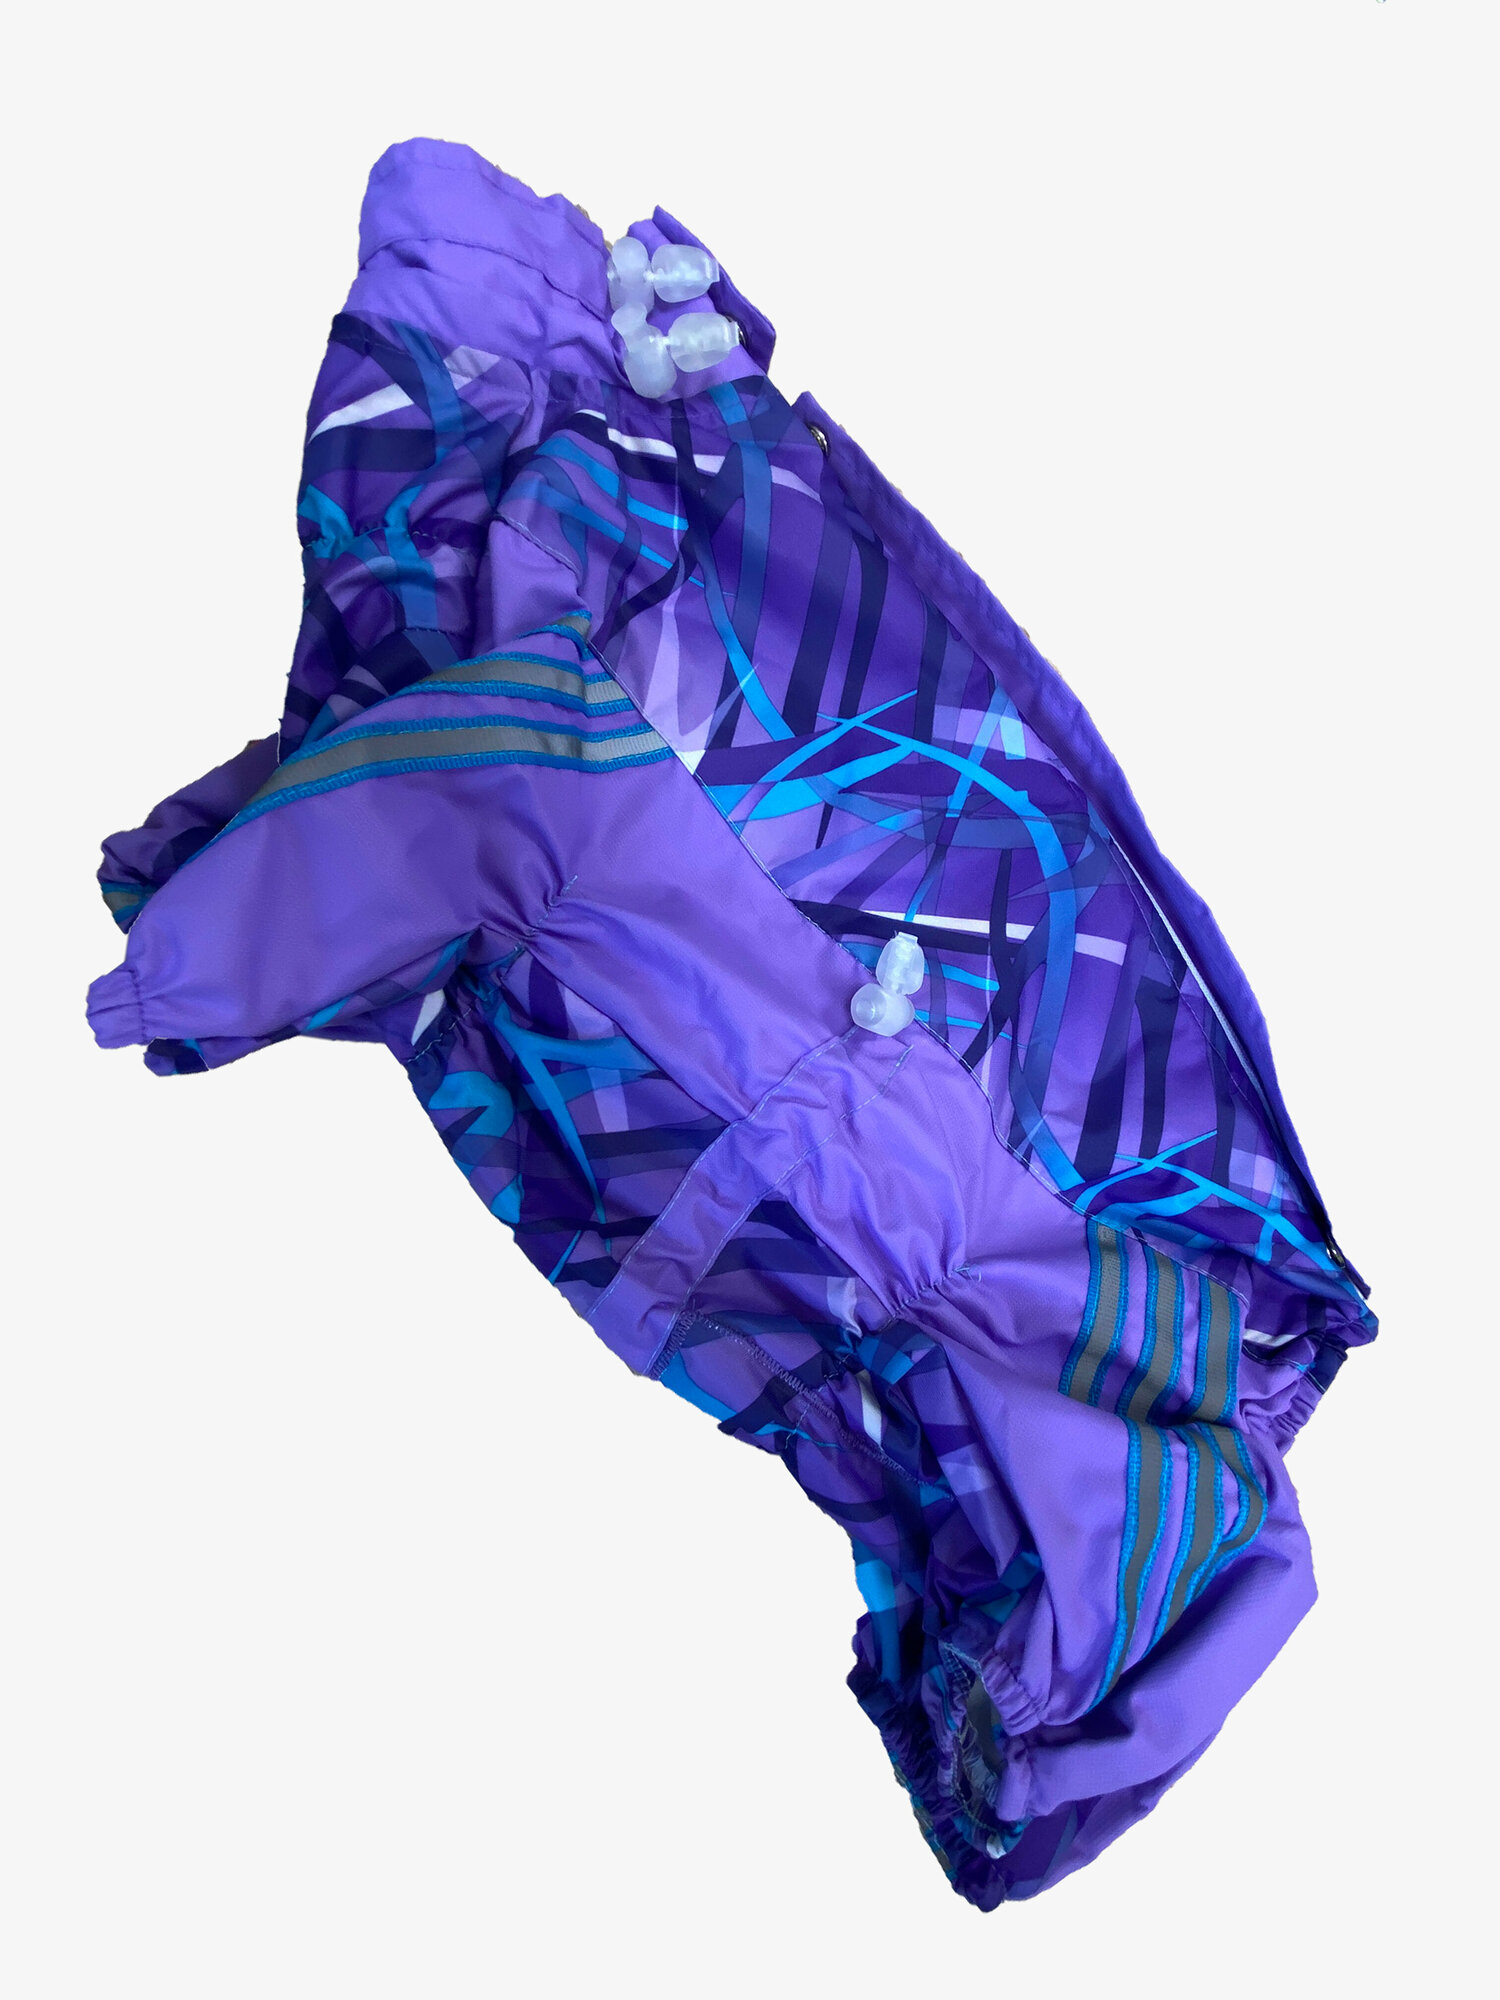 Stillo di Bari дождевик фиолетовый мембрана для собак №10 33cm полн.2